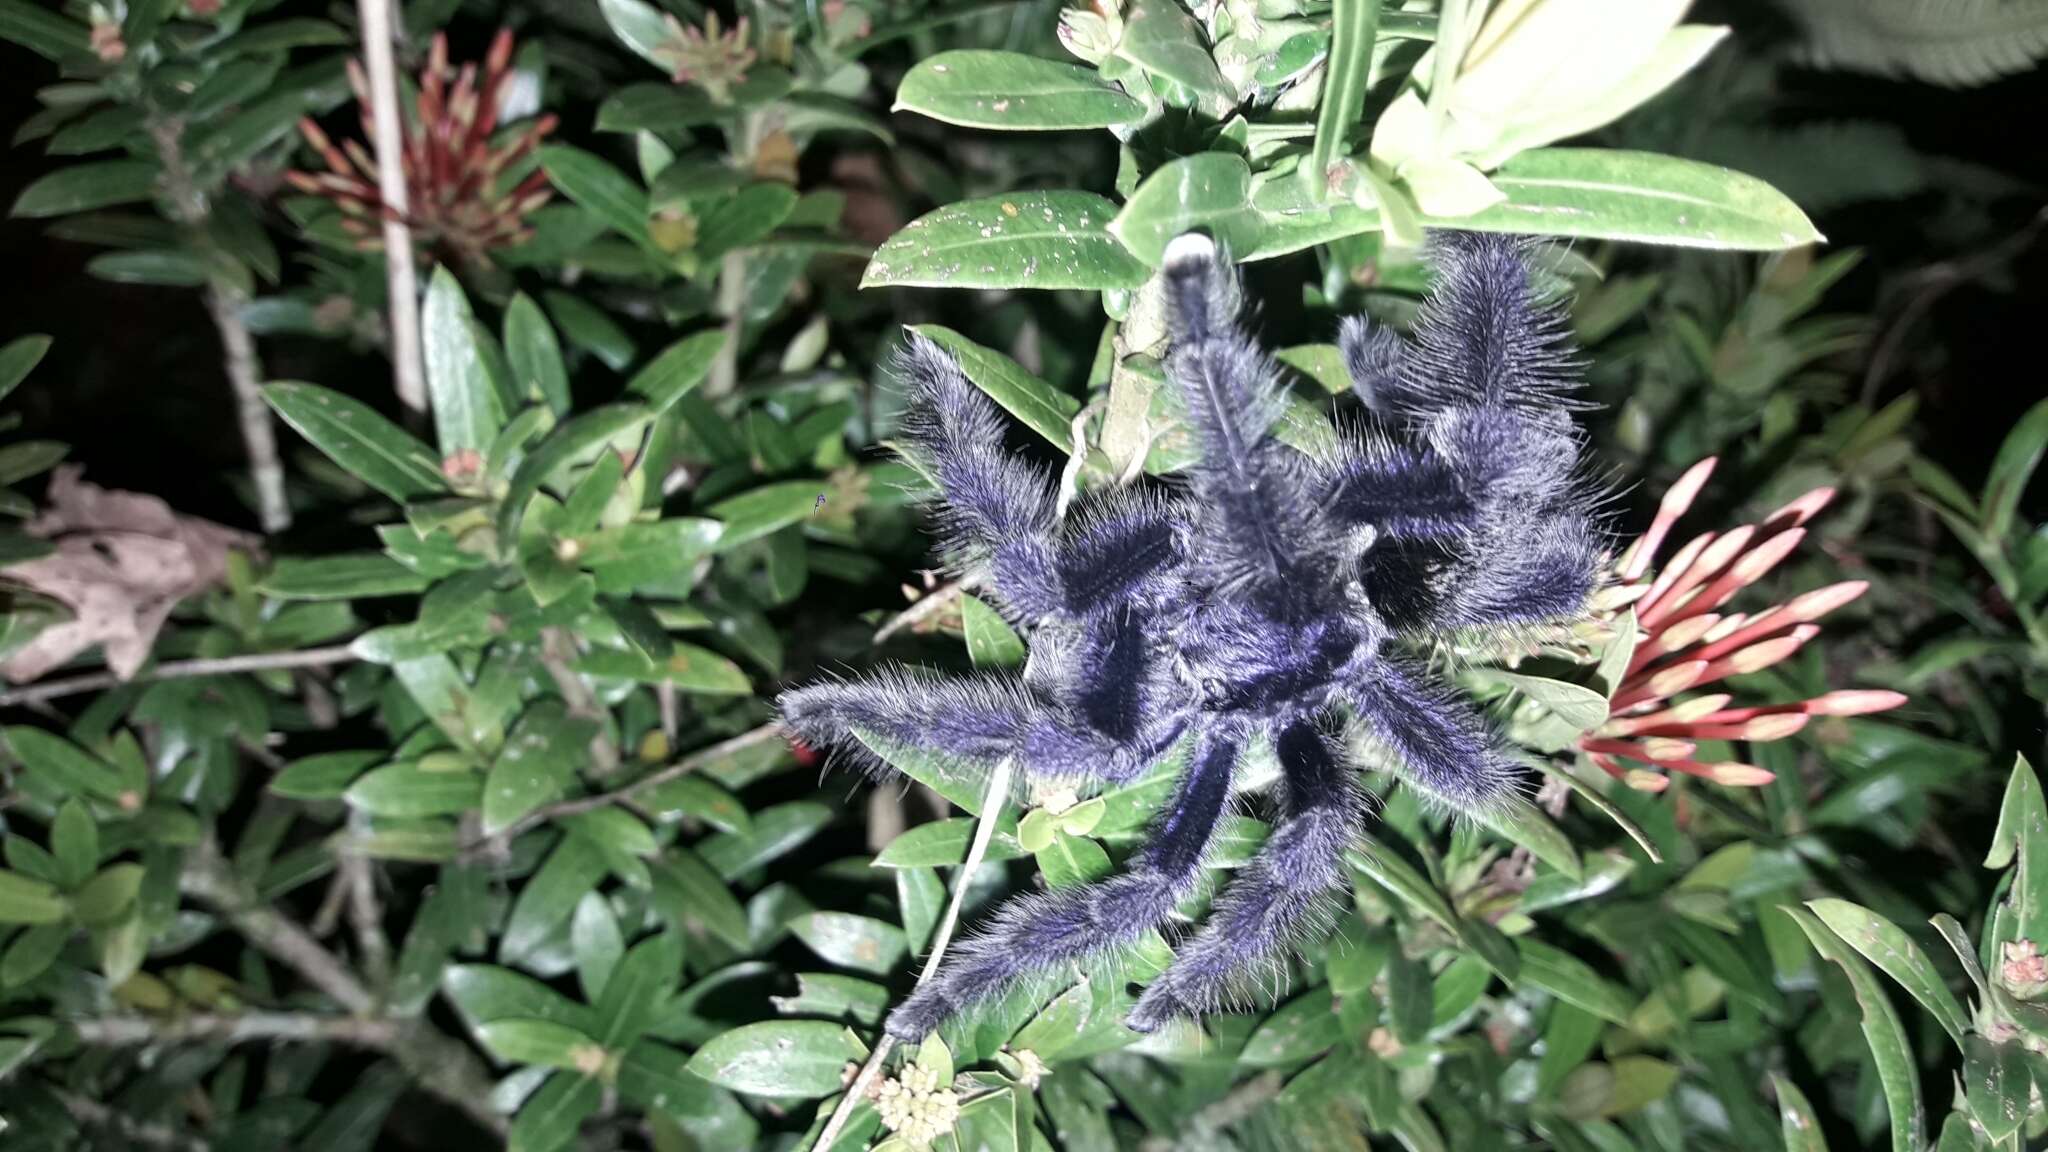 Image of Ecuadorian Purple Tarantula